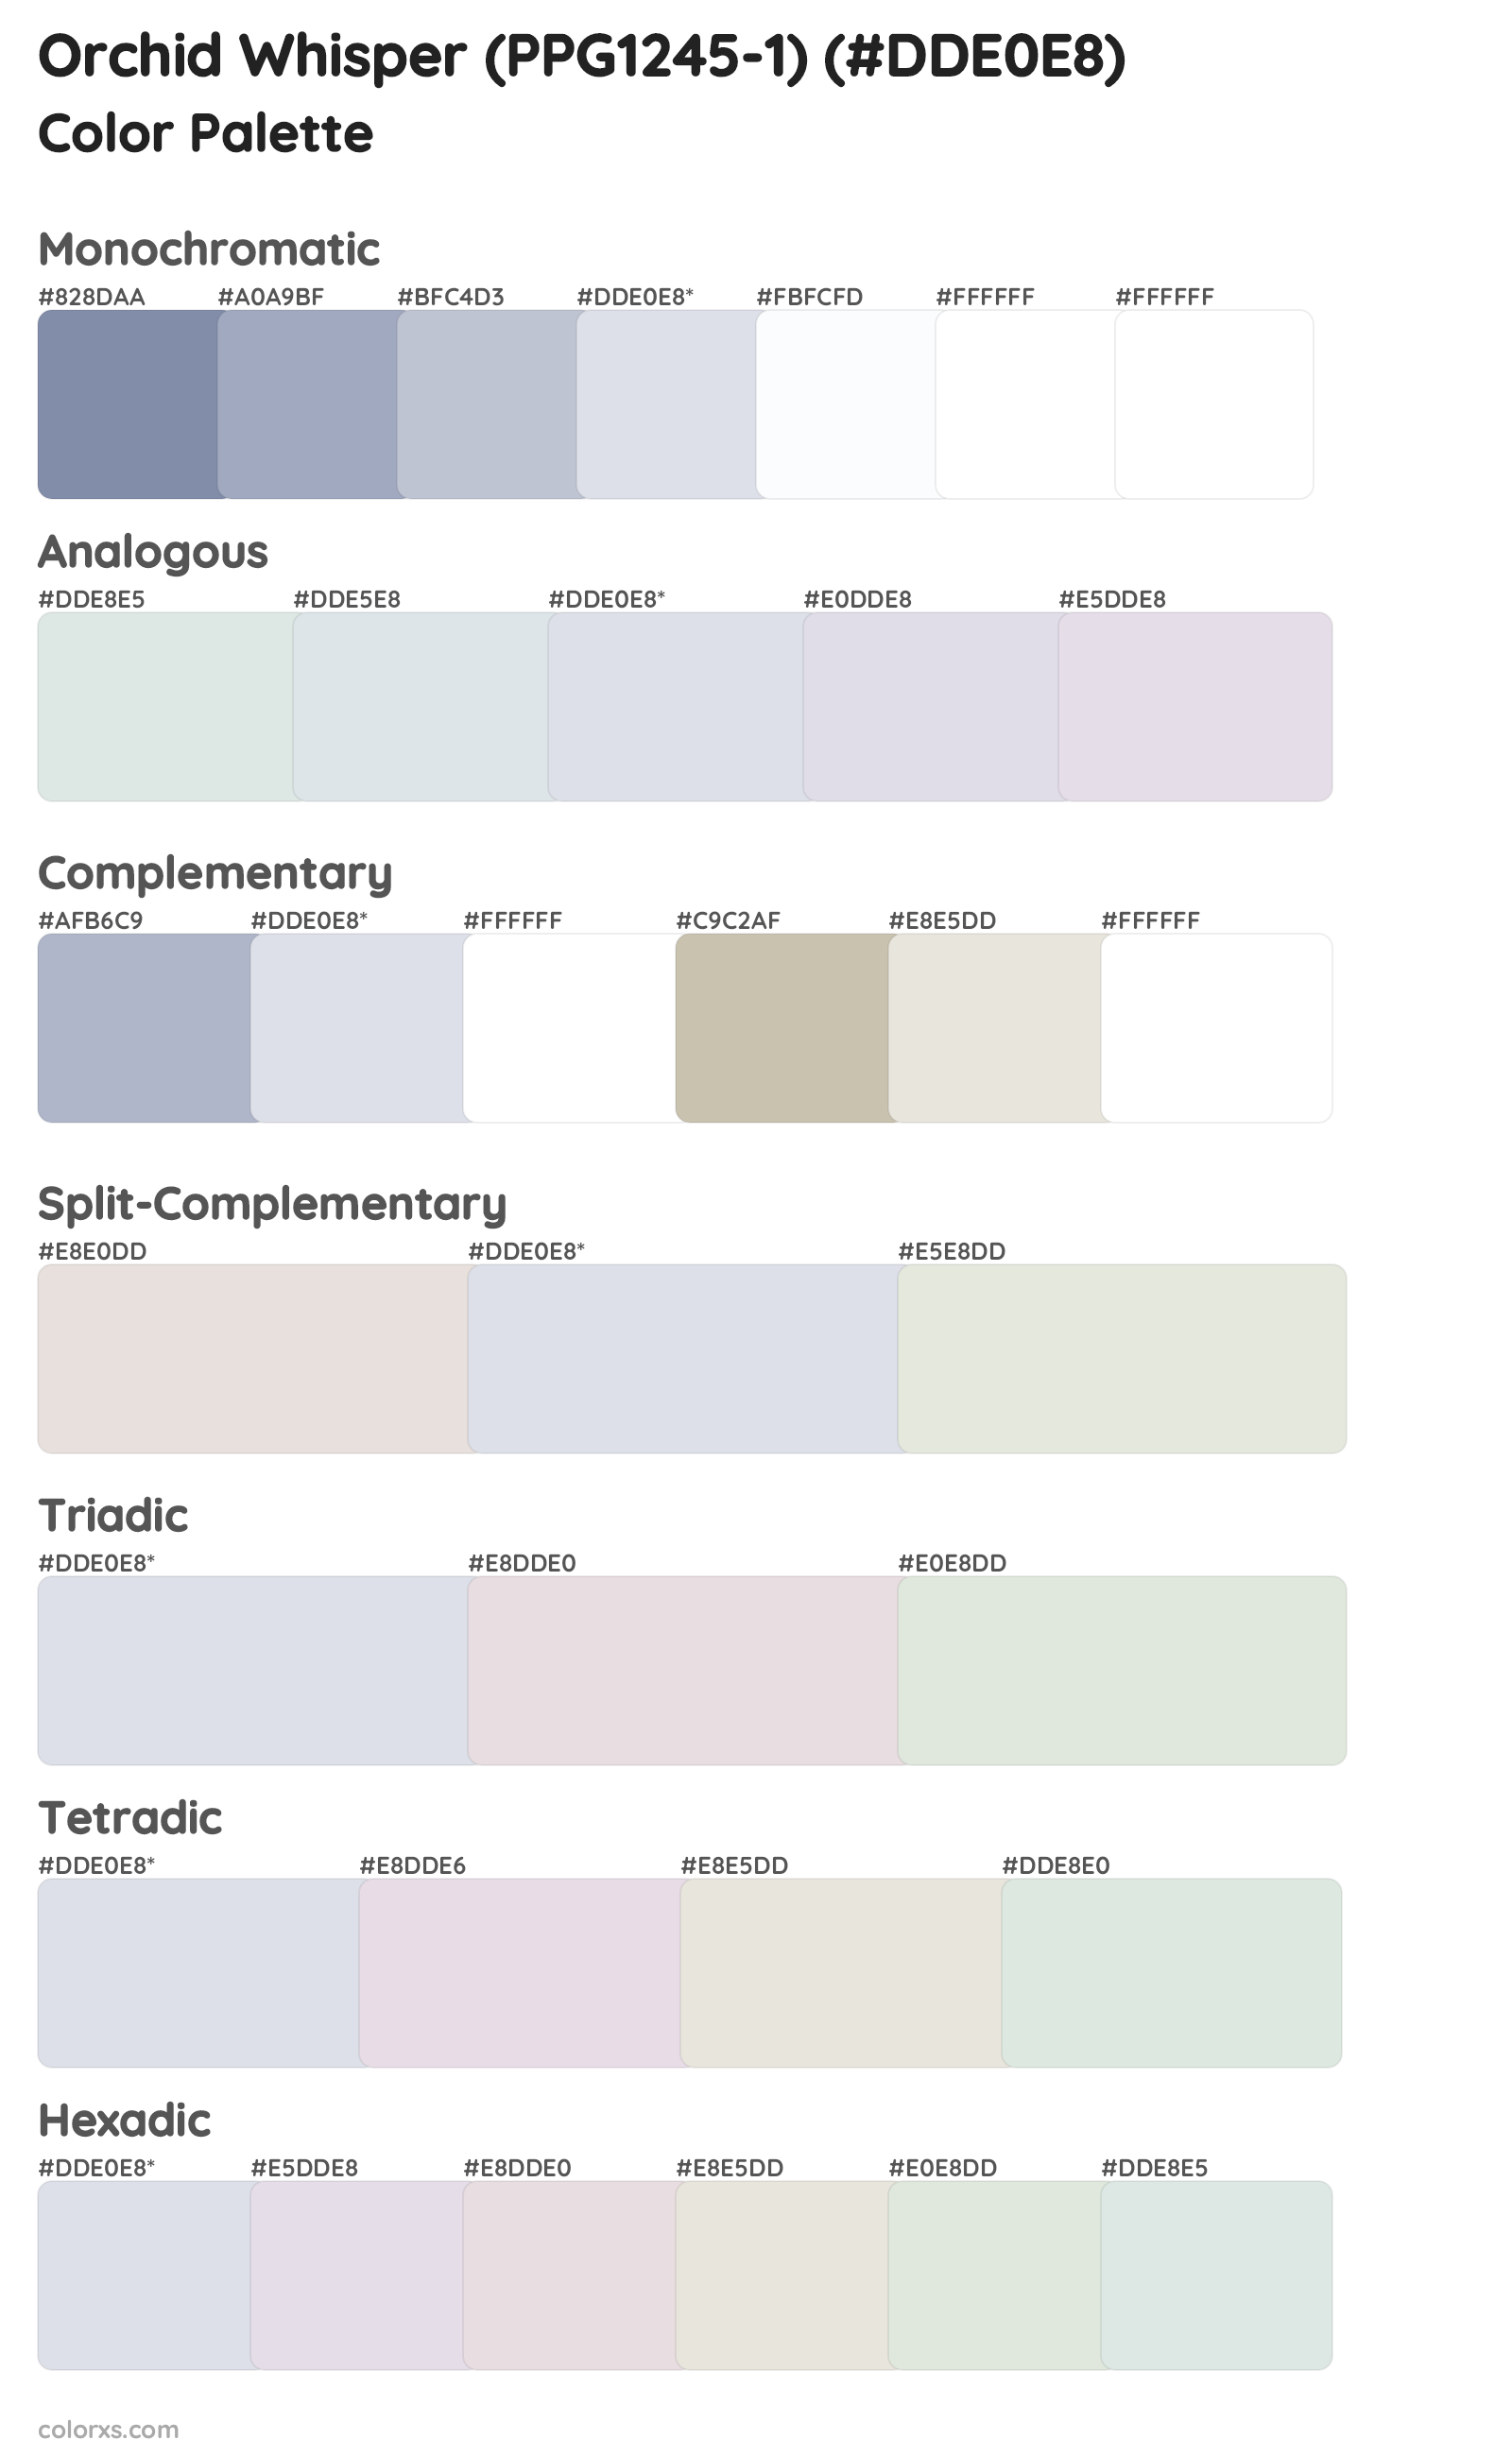 Orchid Whisper (PPG1245-1) Color Scheme Palettes